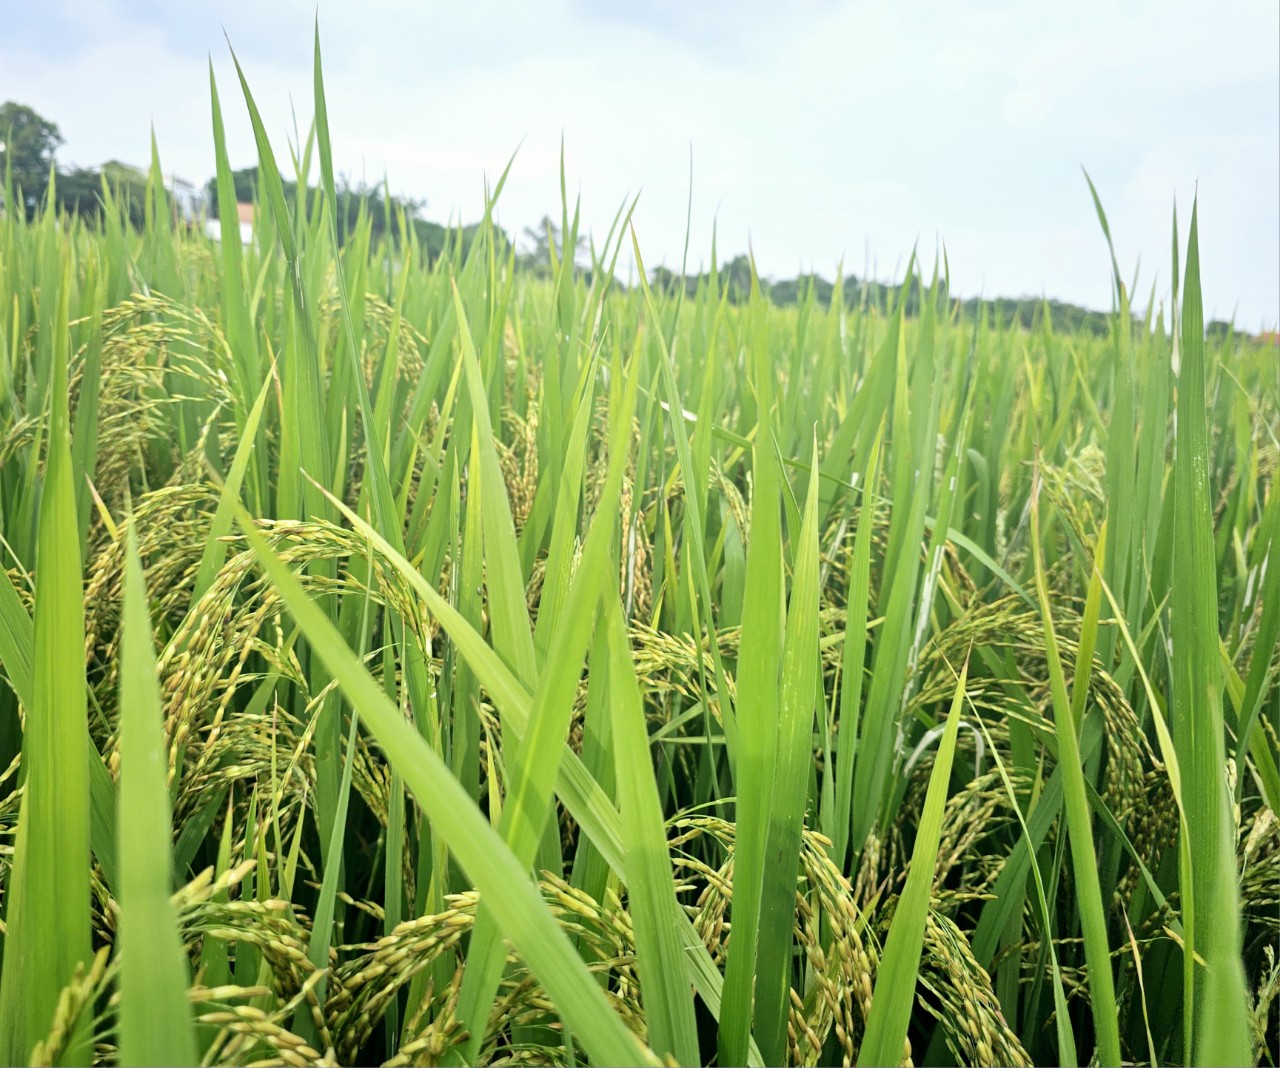 Không chỉ cây lúa khỏe, sạch bệnh, môi trường đồng ruộng tại các diện tích sản xuất lúa hữu cơ cũng rất trong lành. Ảnh: Hoàng Anh.